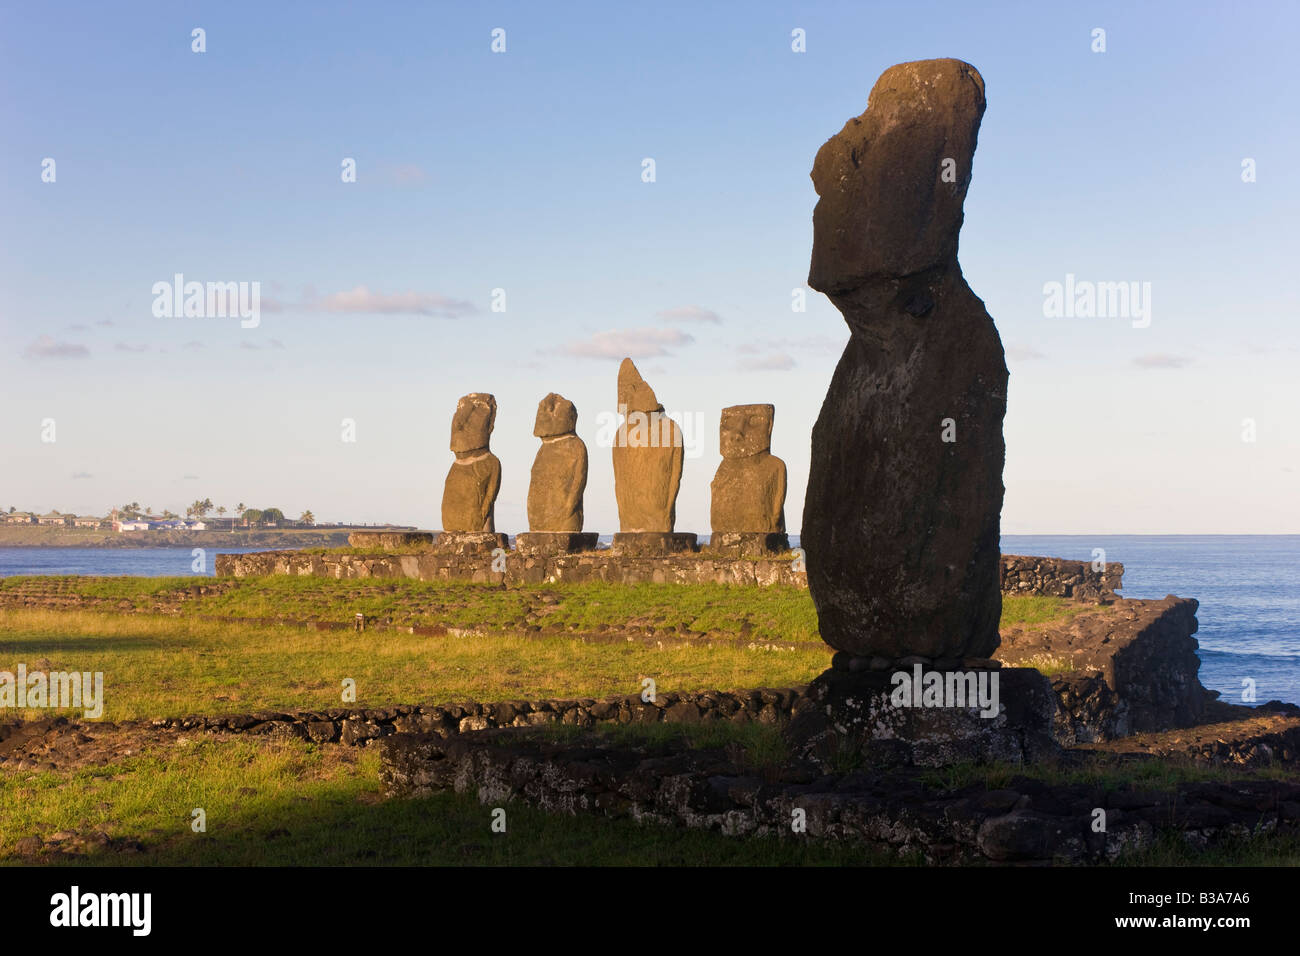 South America, Chile, Rapa Nui, Easter Island, moai stone statues at Ahu Vai Uri Stock Photo